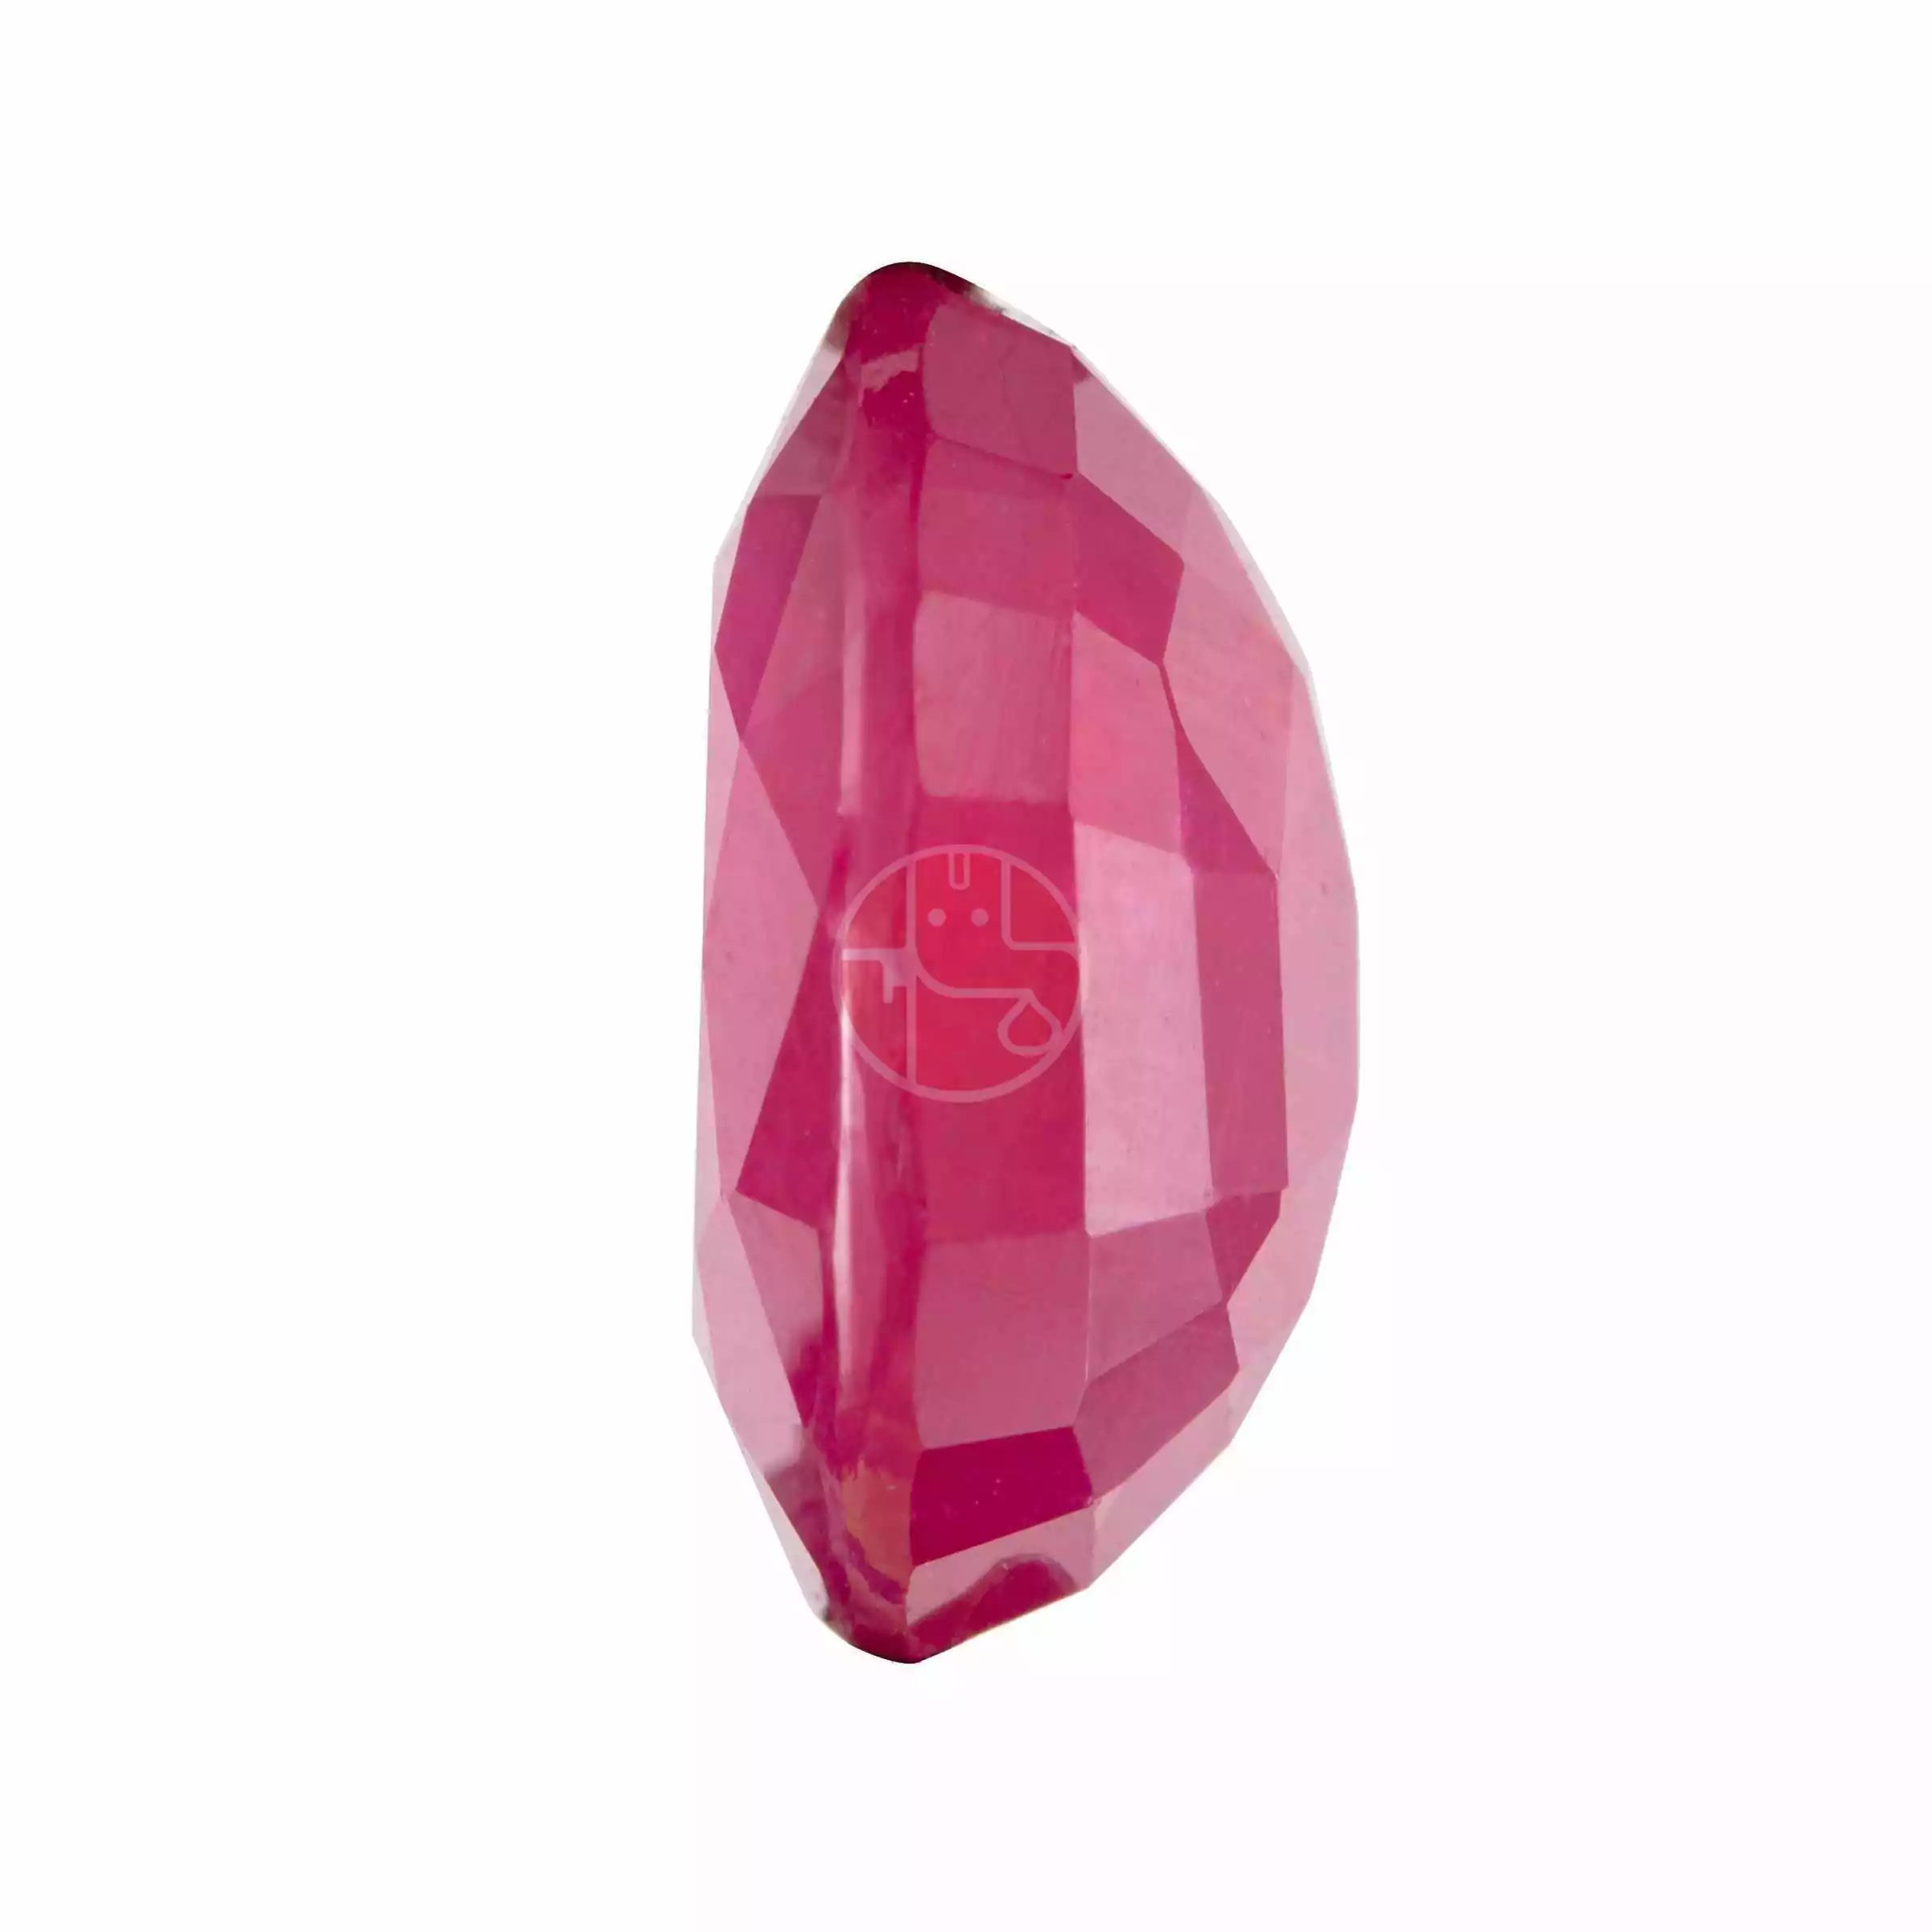 Ruby (Manik) Gemstone – 5.25